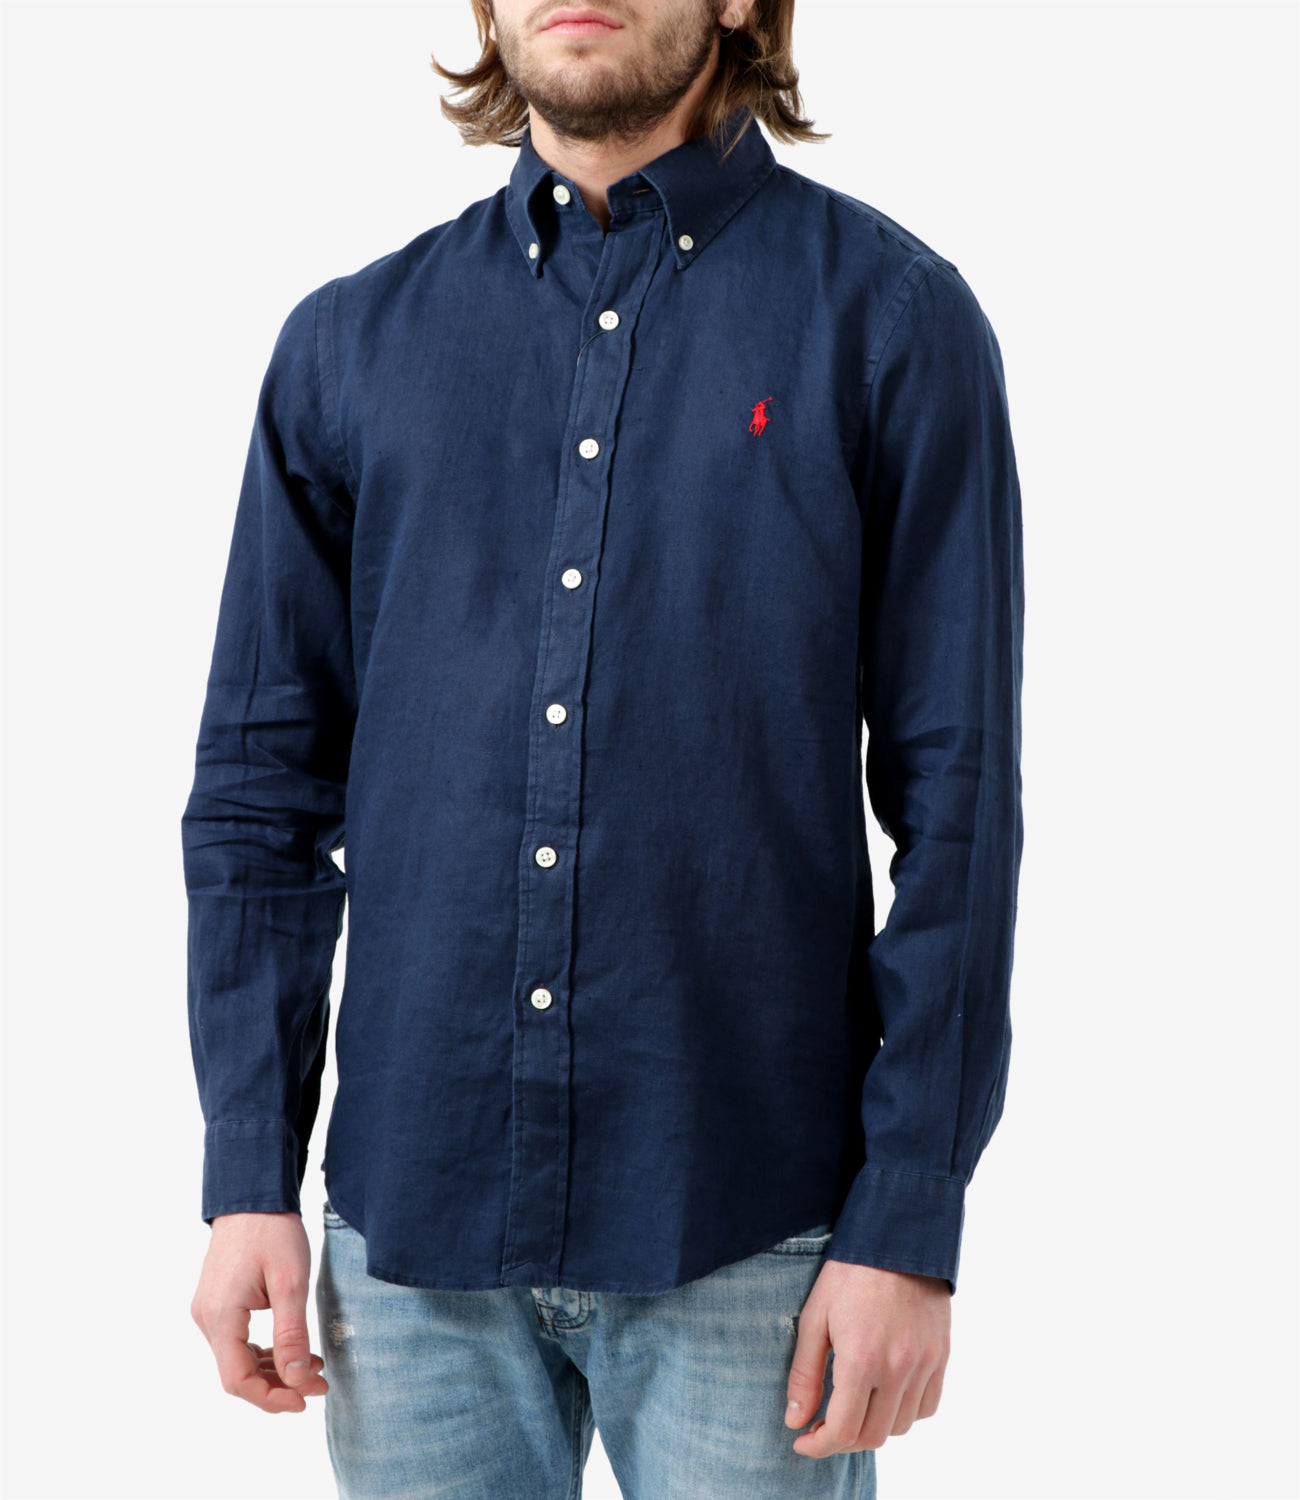 Polo Ralph Lauren Shirt Navy Blue